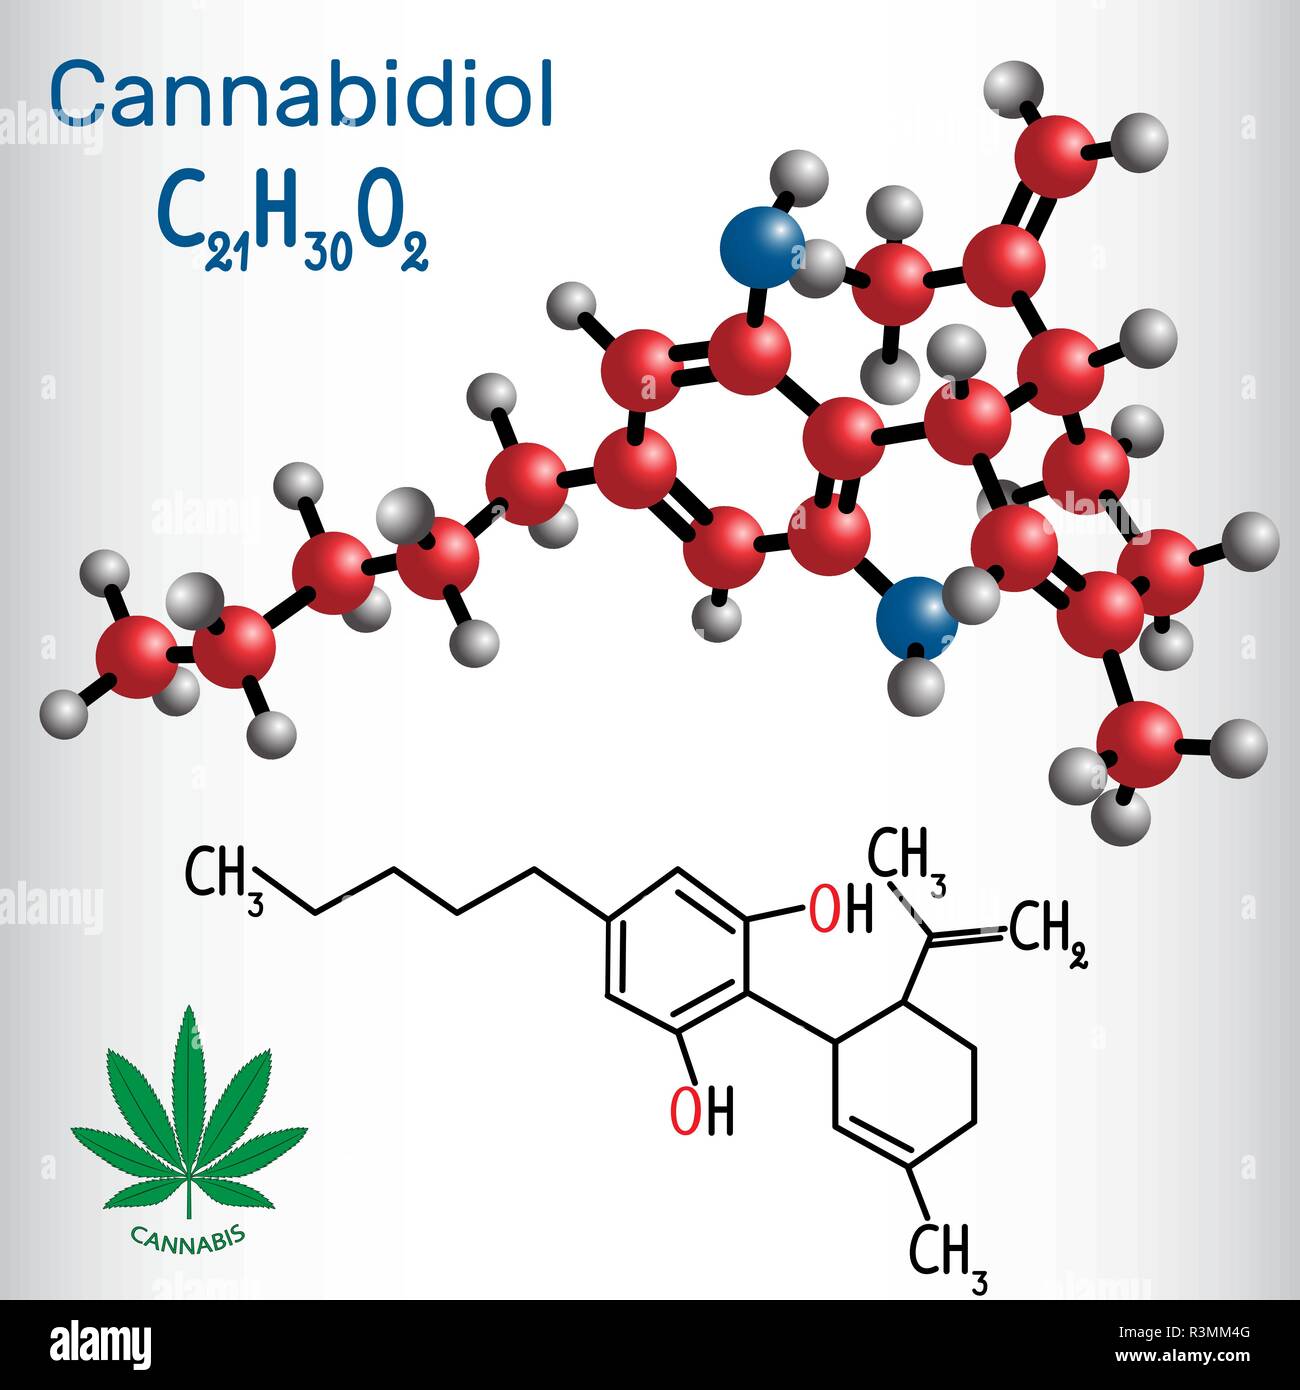 Cannabidiol (CBD) - Strukturelle chemische Formel und Molekül-Modell. Aktive CANNABINOID in Cannabis, hat antipsychotischen Wirkung. Vector Illustration Stock Vektor